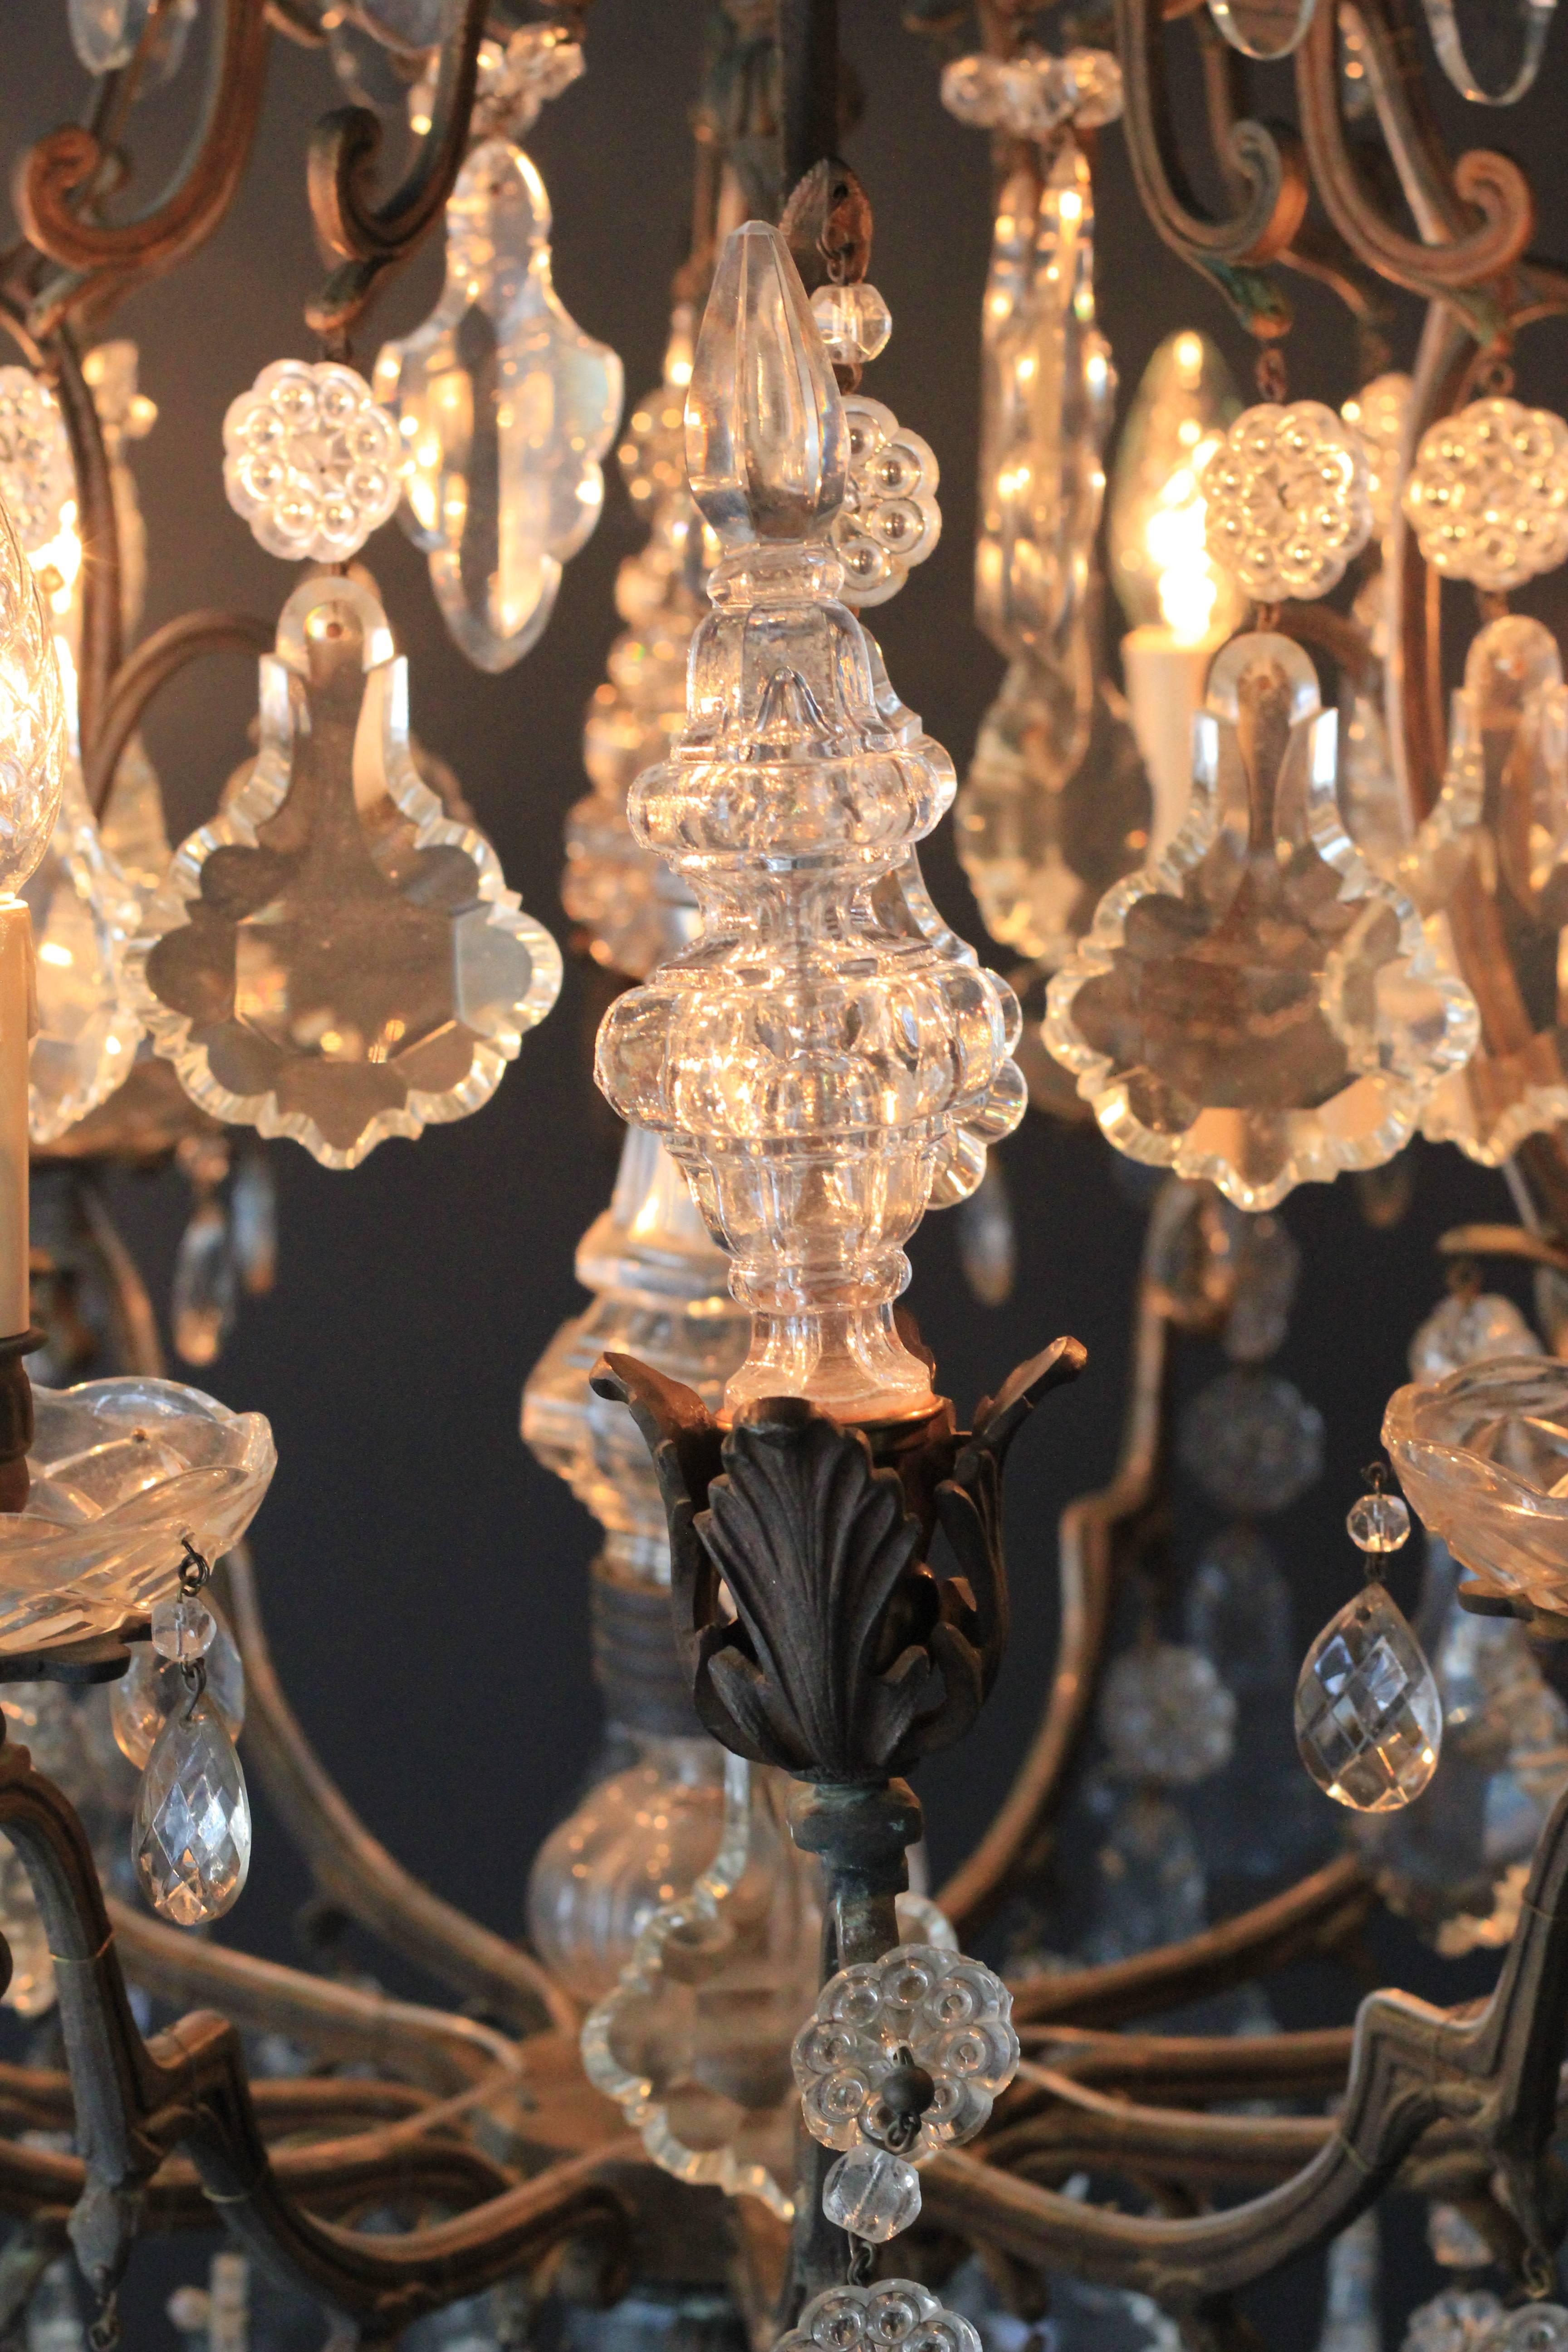 Fine Rarity Crystal Chandelier 1920 Lustre Antique Ceiling Lamp Art Nouveau WoW (Kristall)